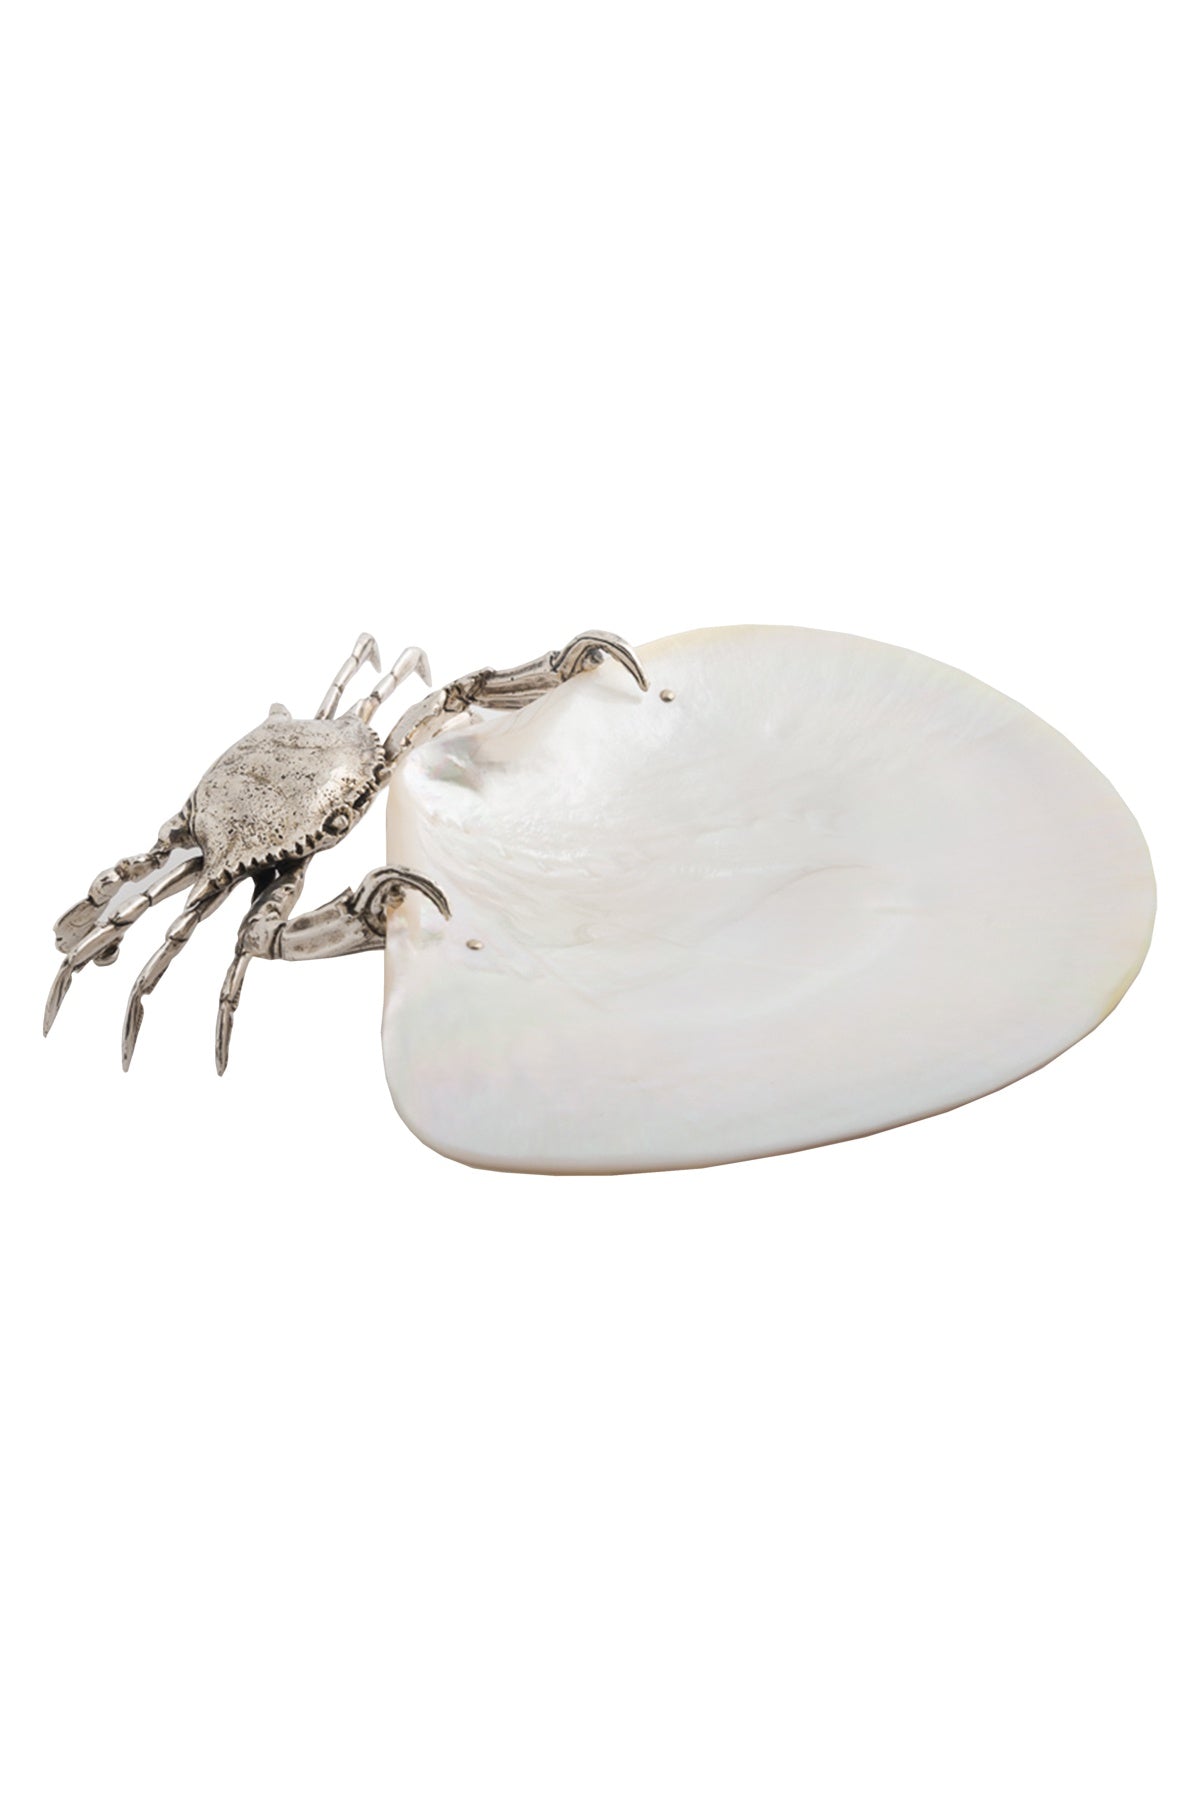 Hercules Crab Plate